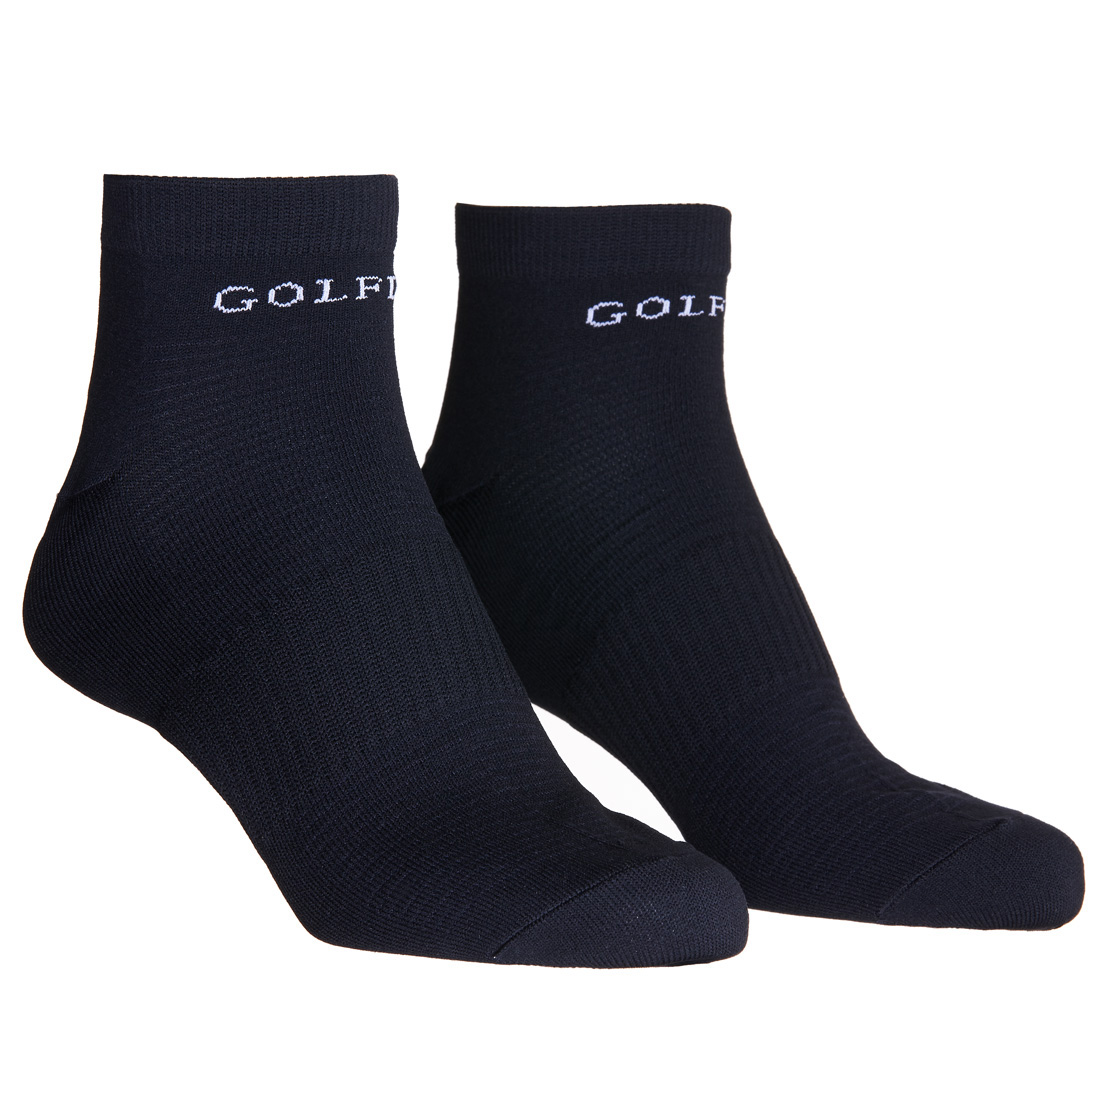 Men's golf socks made from moisture-regulating material